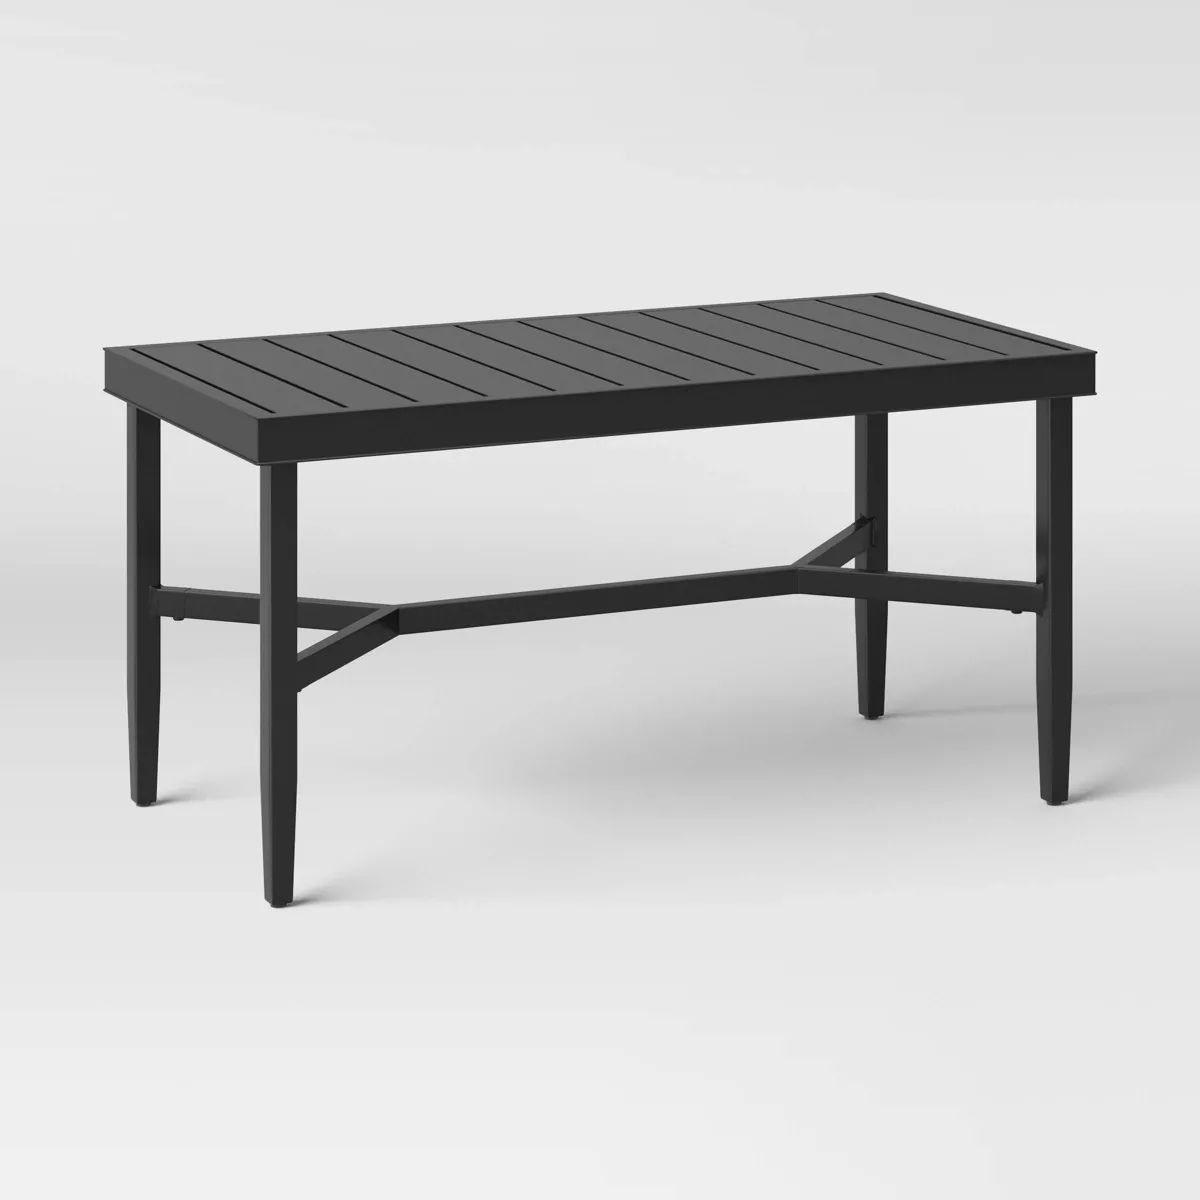 Searsburg Aluminum Slat Top Coffee Table - Black - Threshold™ | Target